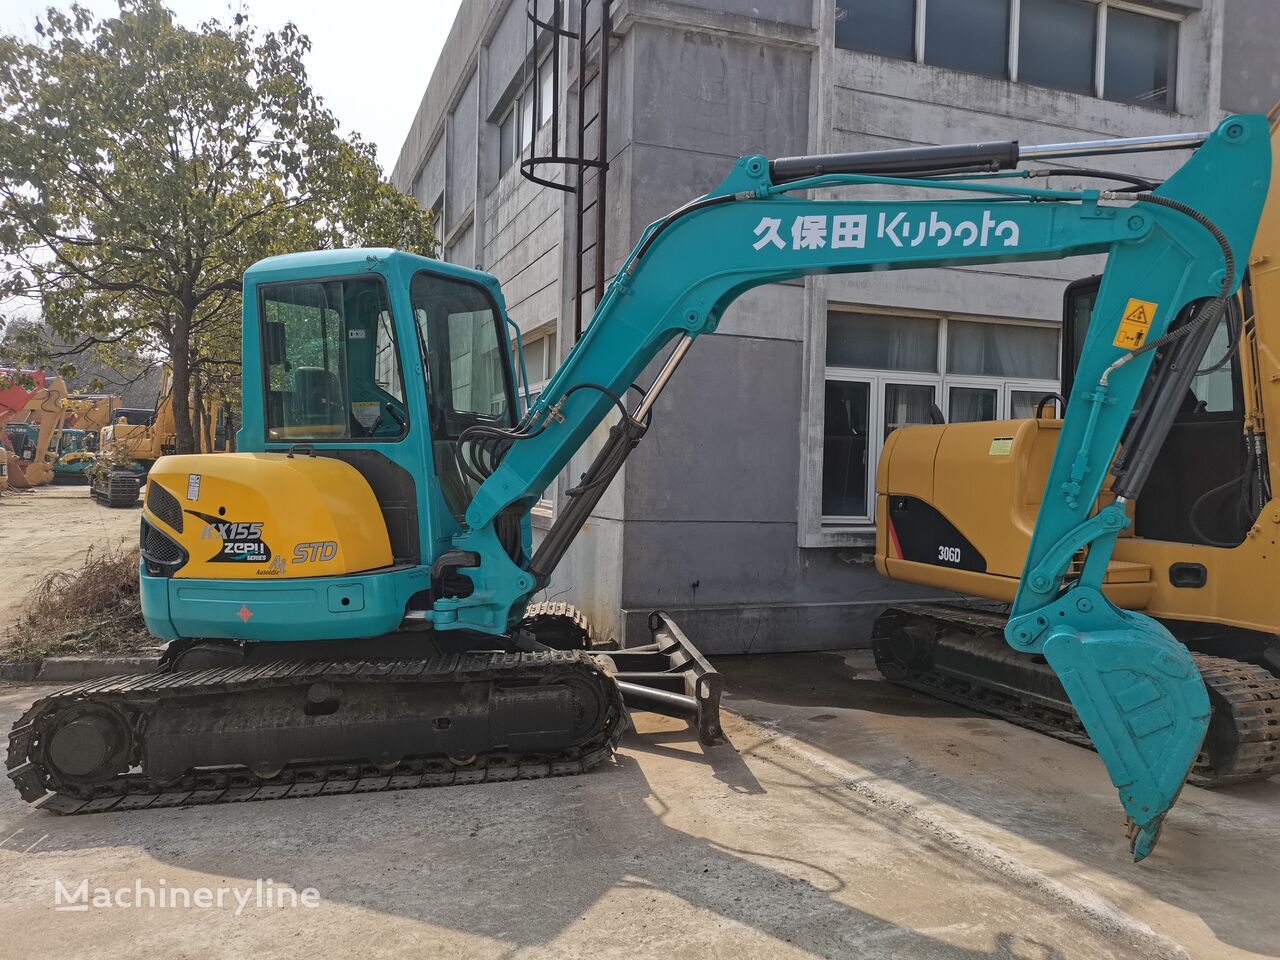 트랙형 굴착기 Kubota KX155 Tracked Excavator Used Construction Machienry